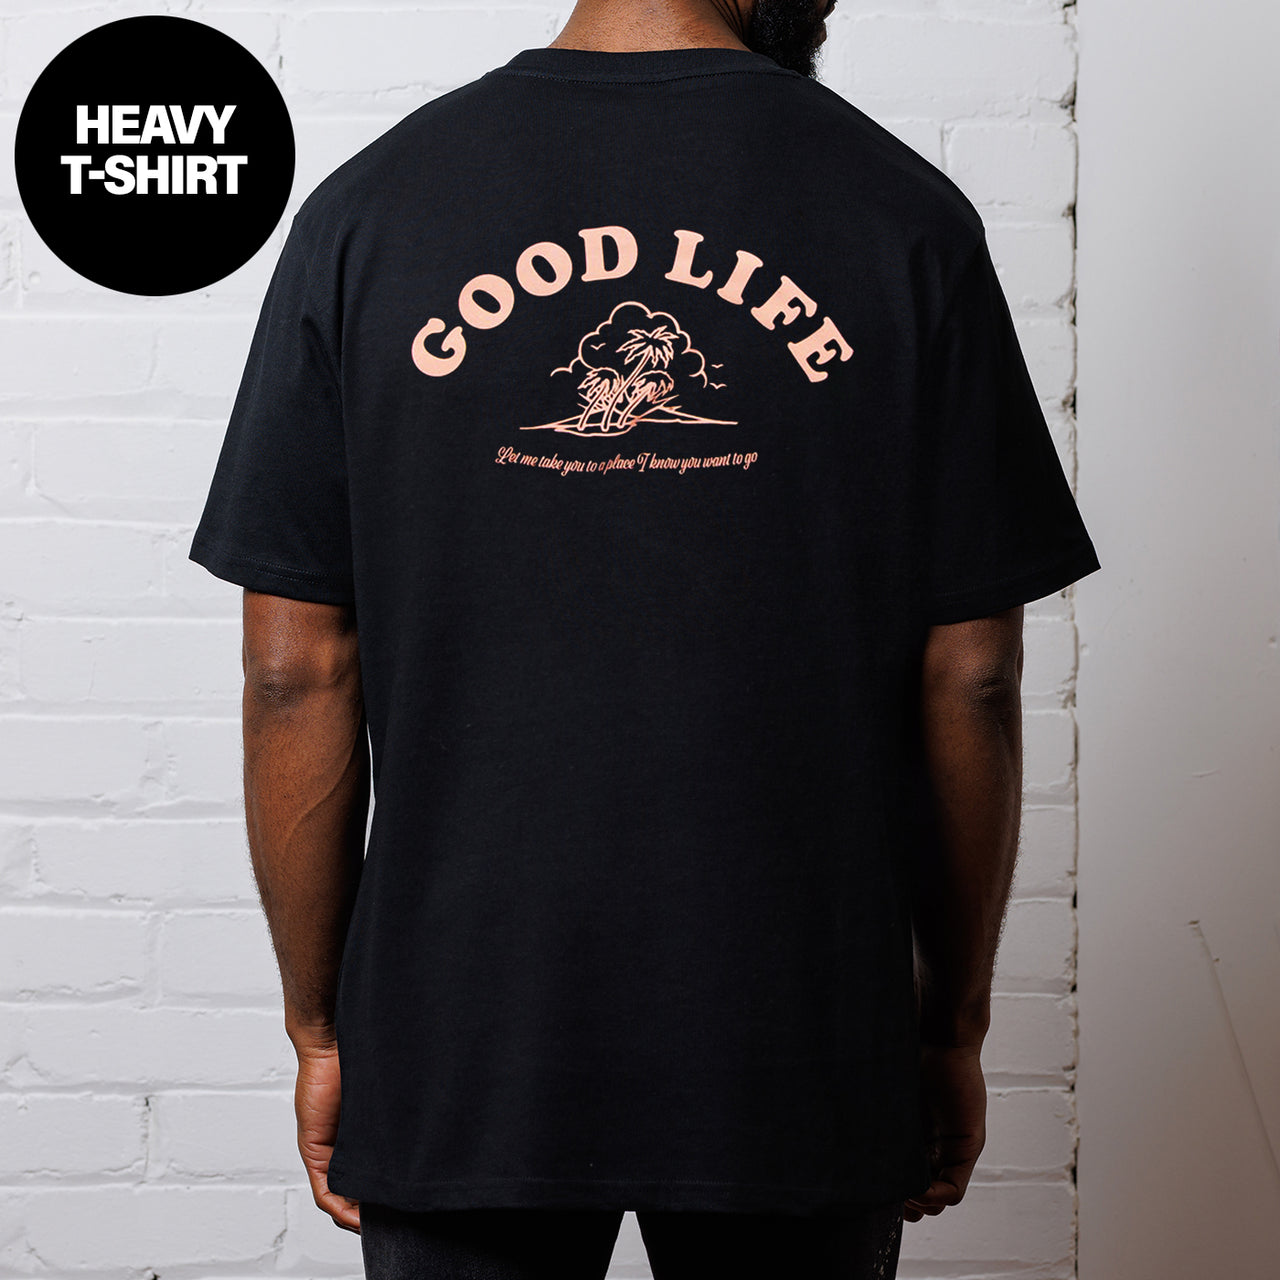 Good Life - Heavy Tshirt - Black